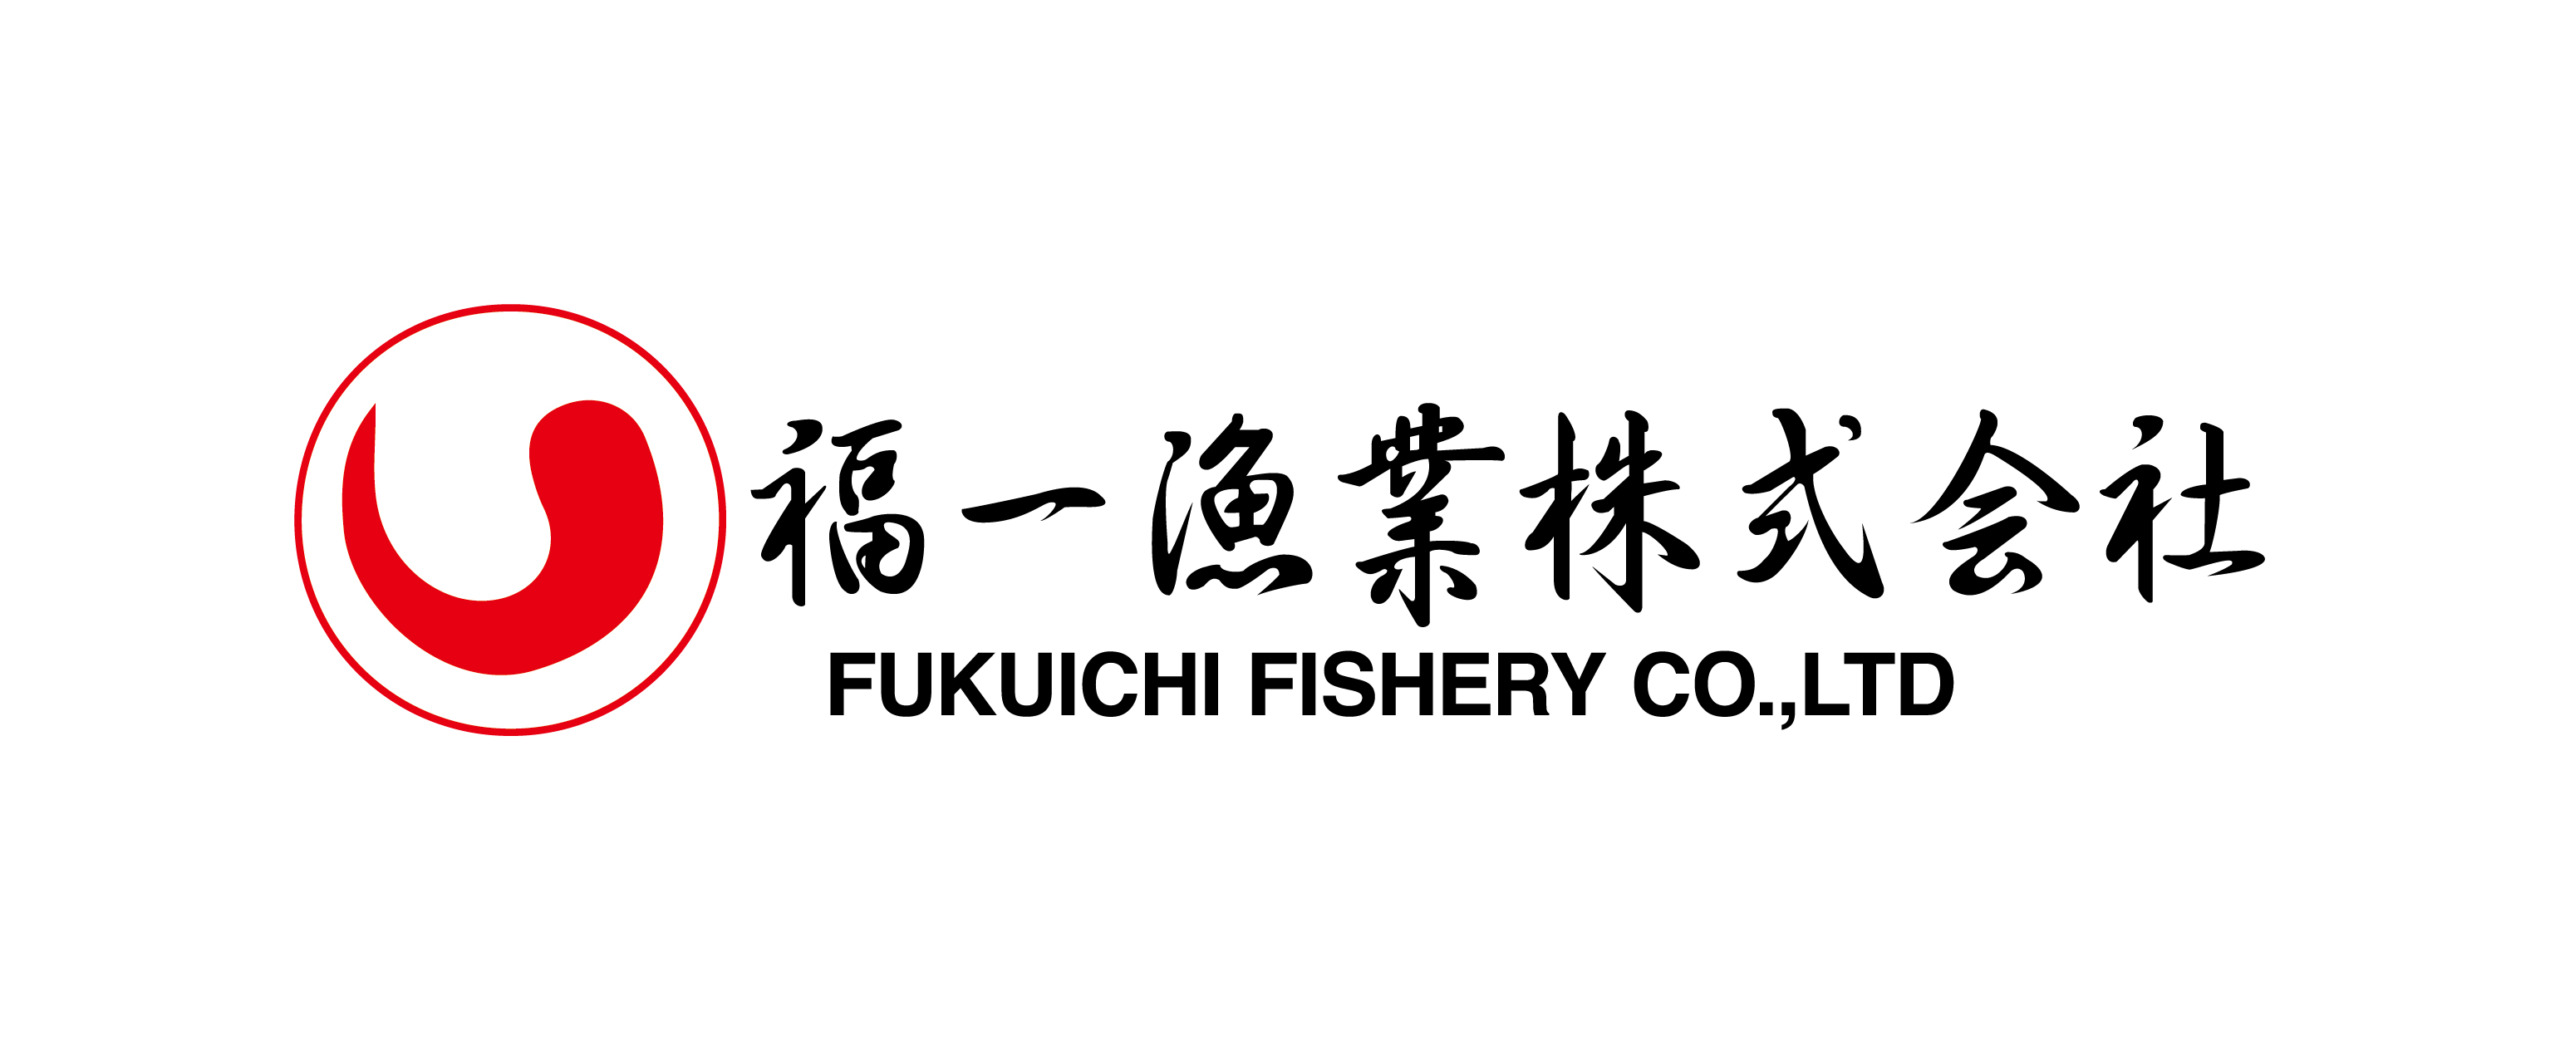 福一漁業株式会社